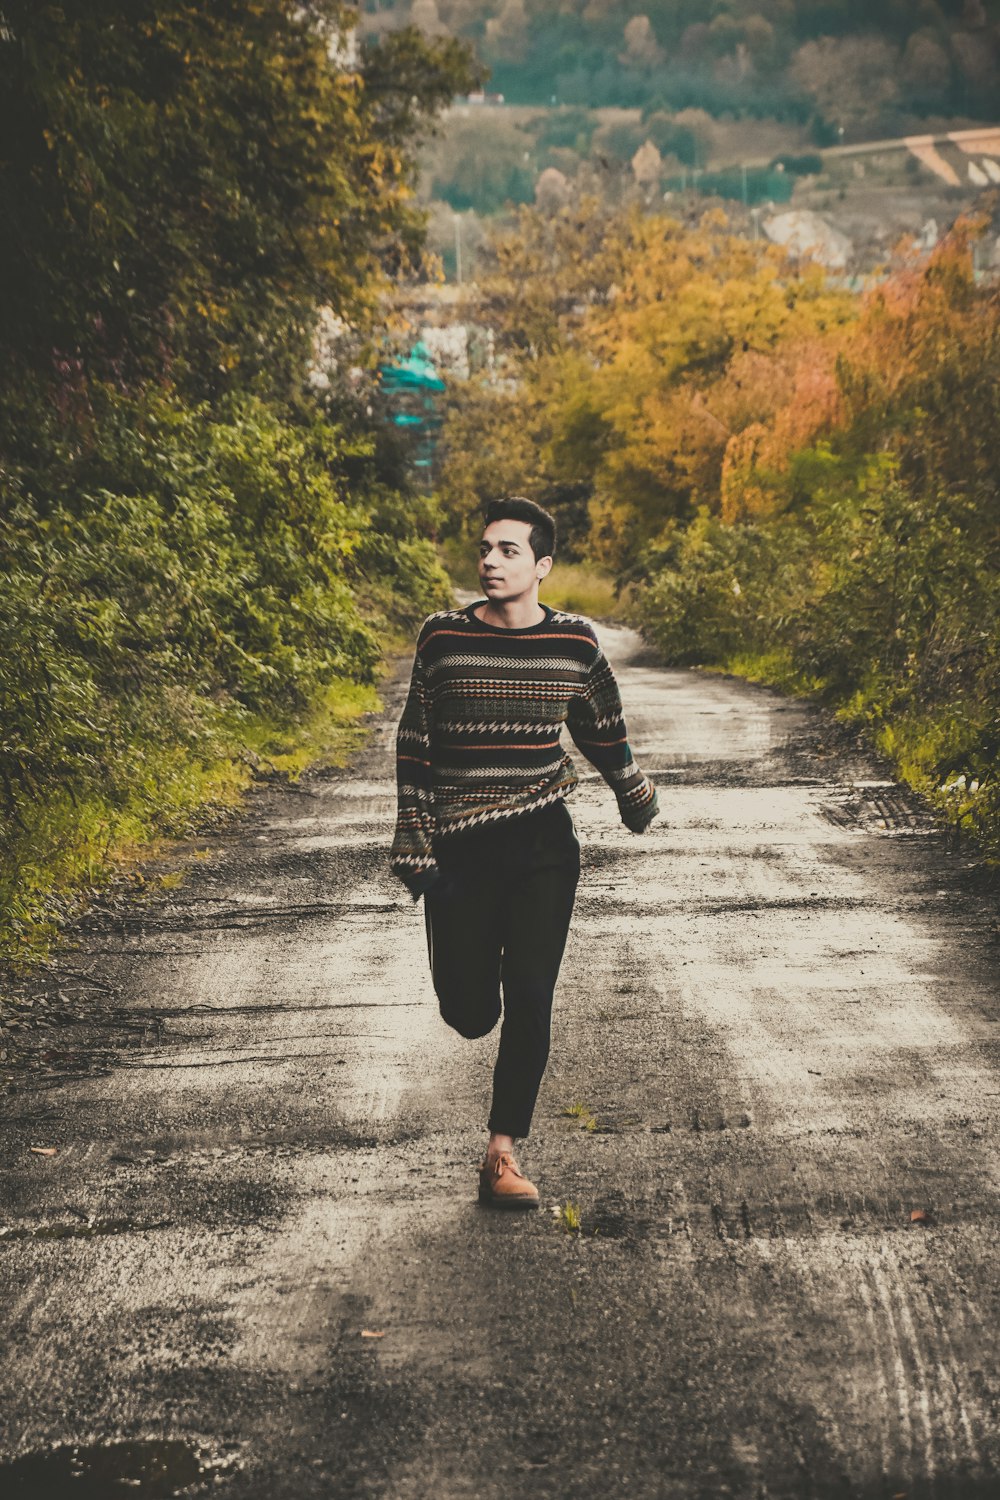 uomo che indossa maglione che corre sulla strada tra gli alberi durante il giorno